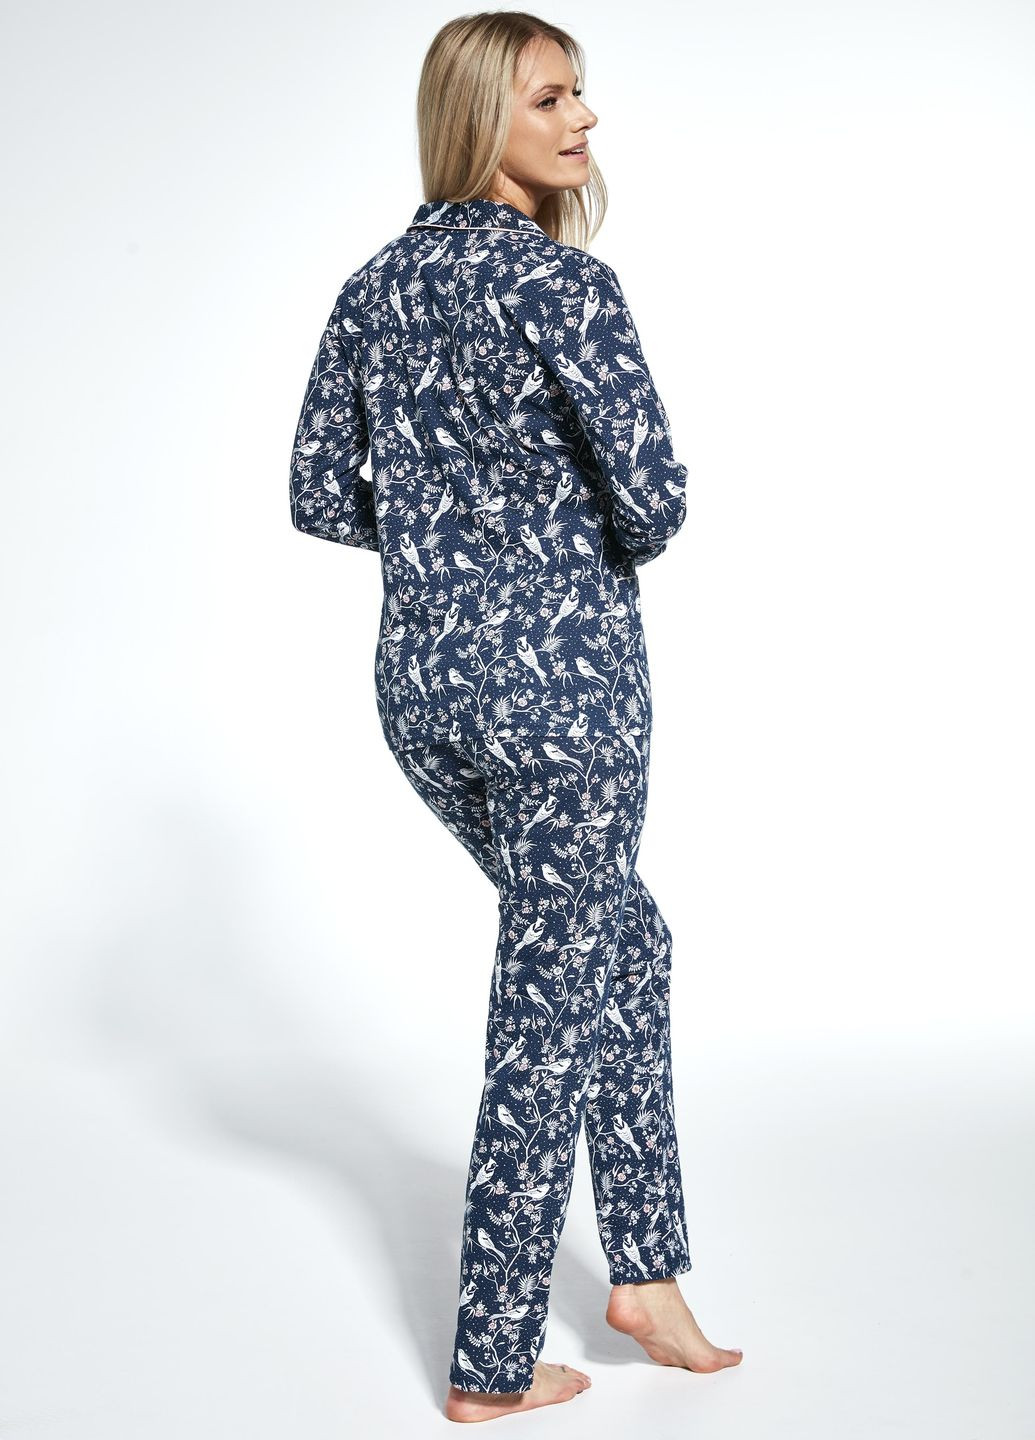 Комбинированная зимняя пижама женская 365 jane navy blue 482-23 рубашка + брюки Cornette